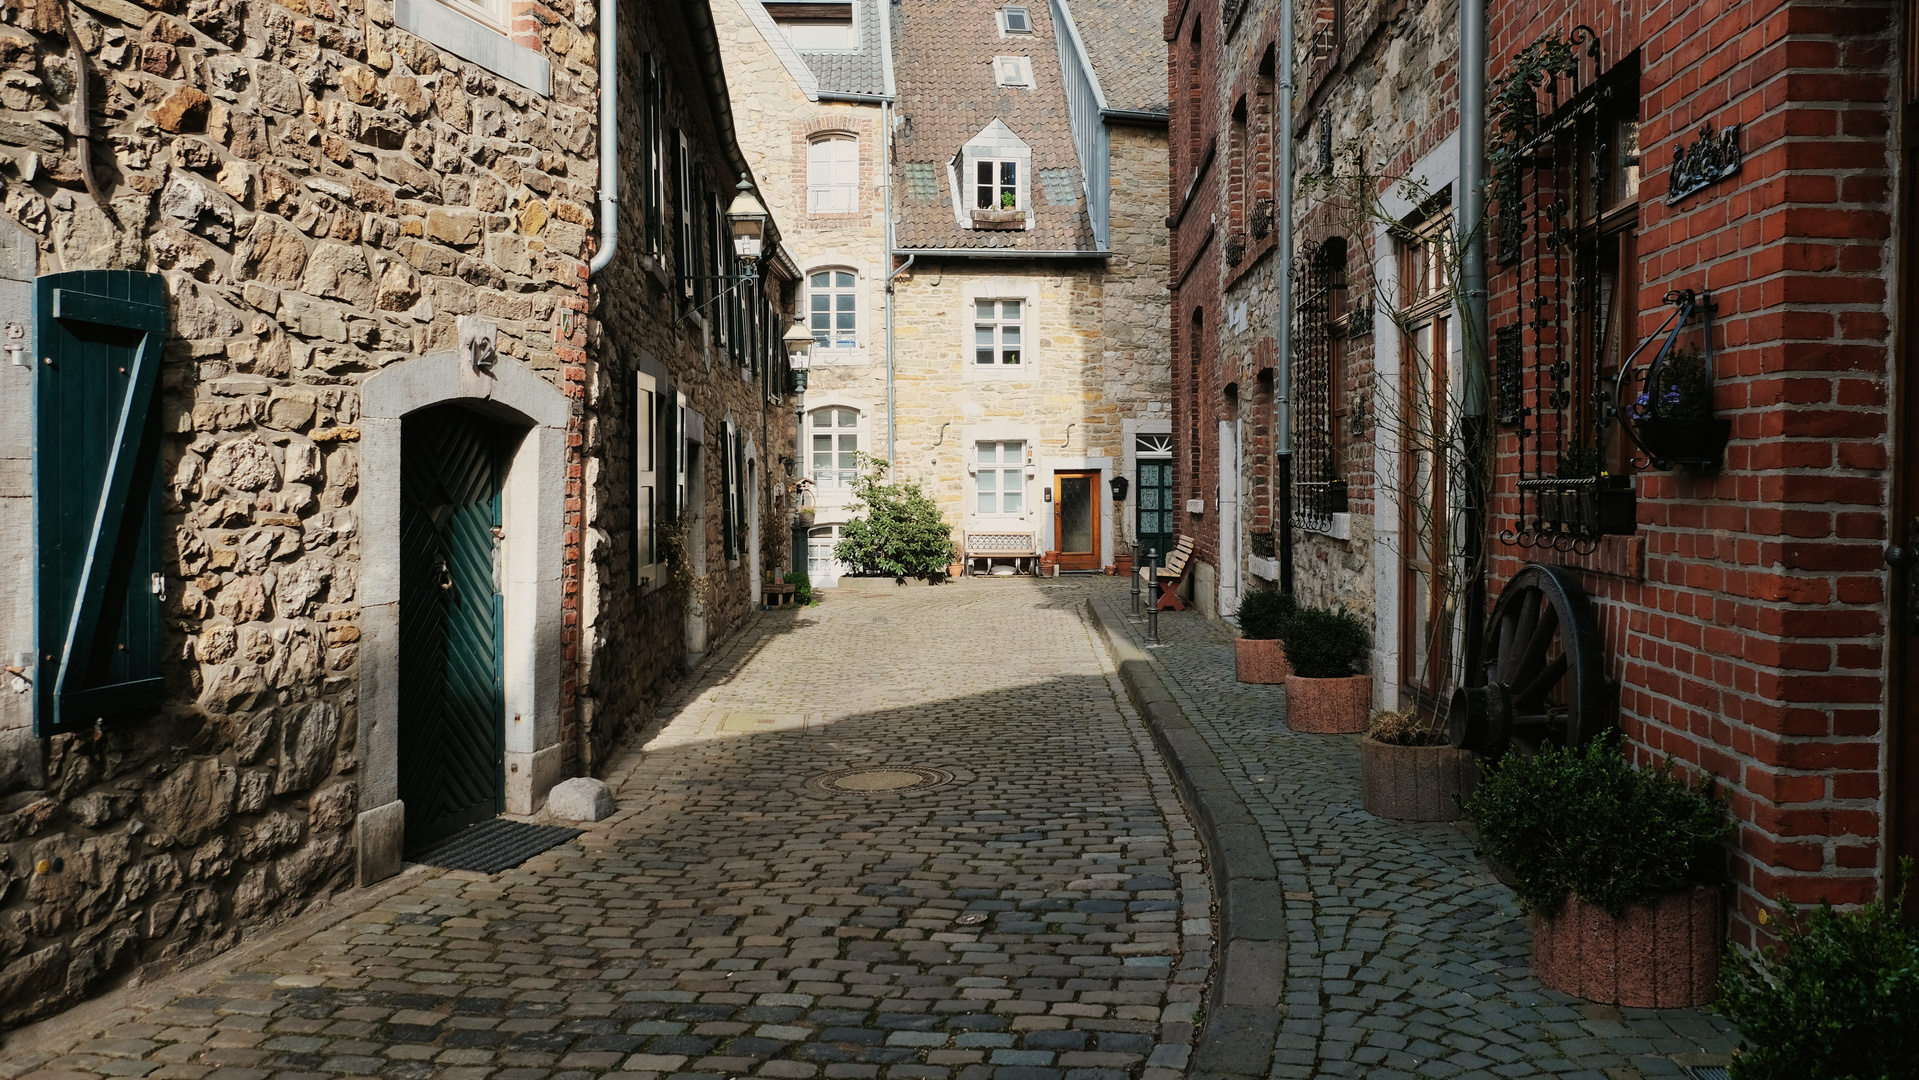 Märchenhafte alte Straße in Deutschland Rheinland